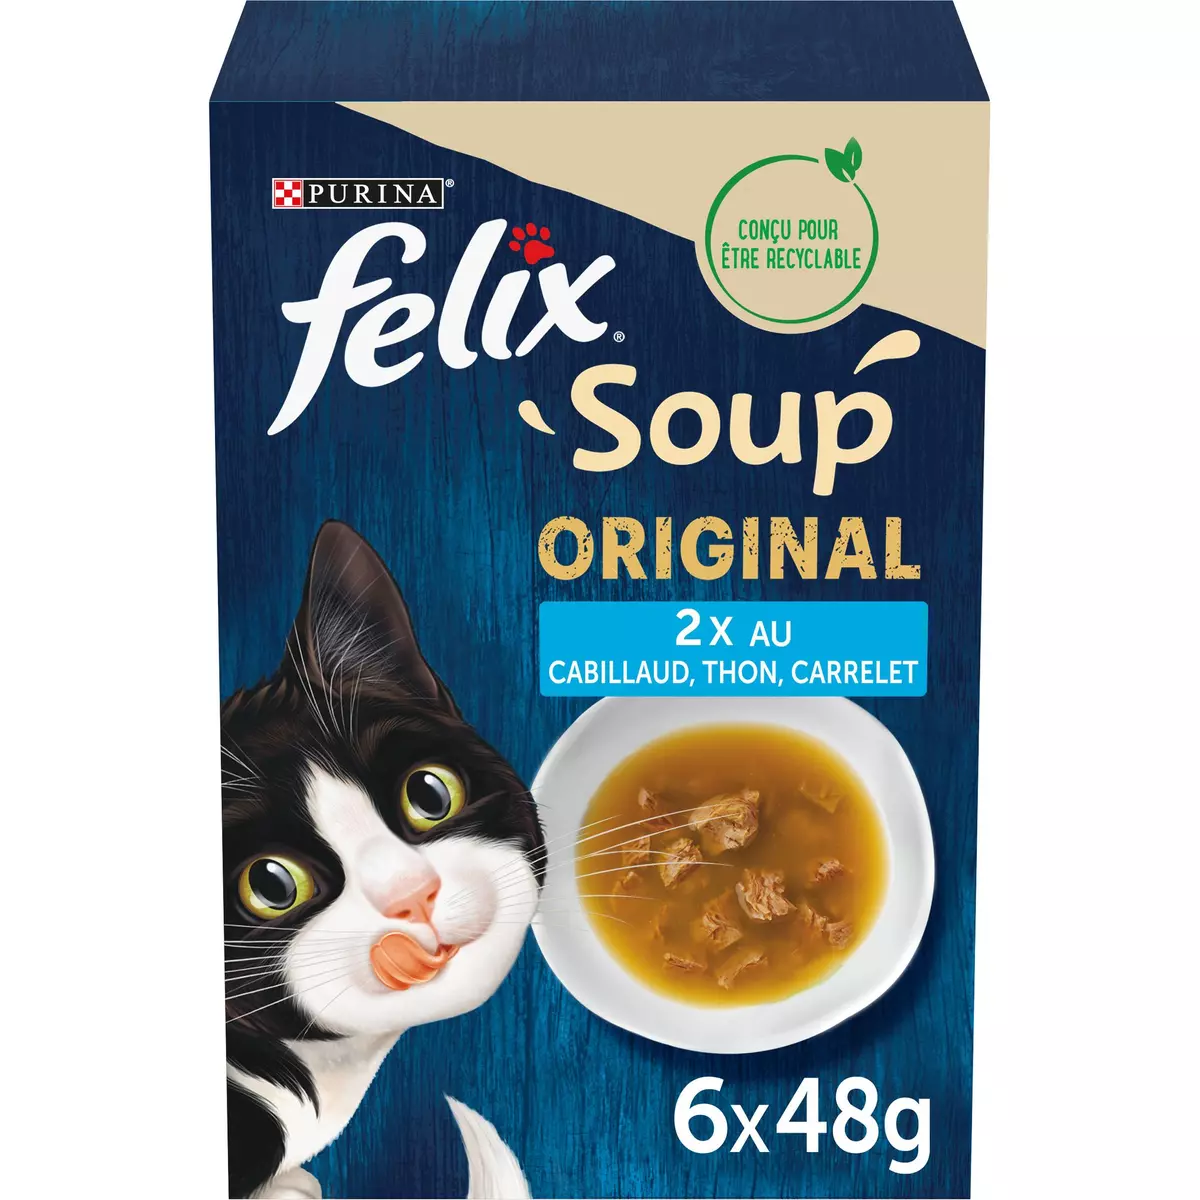 Applaws soupe pour chats - 6x (3x40g)